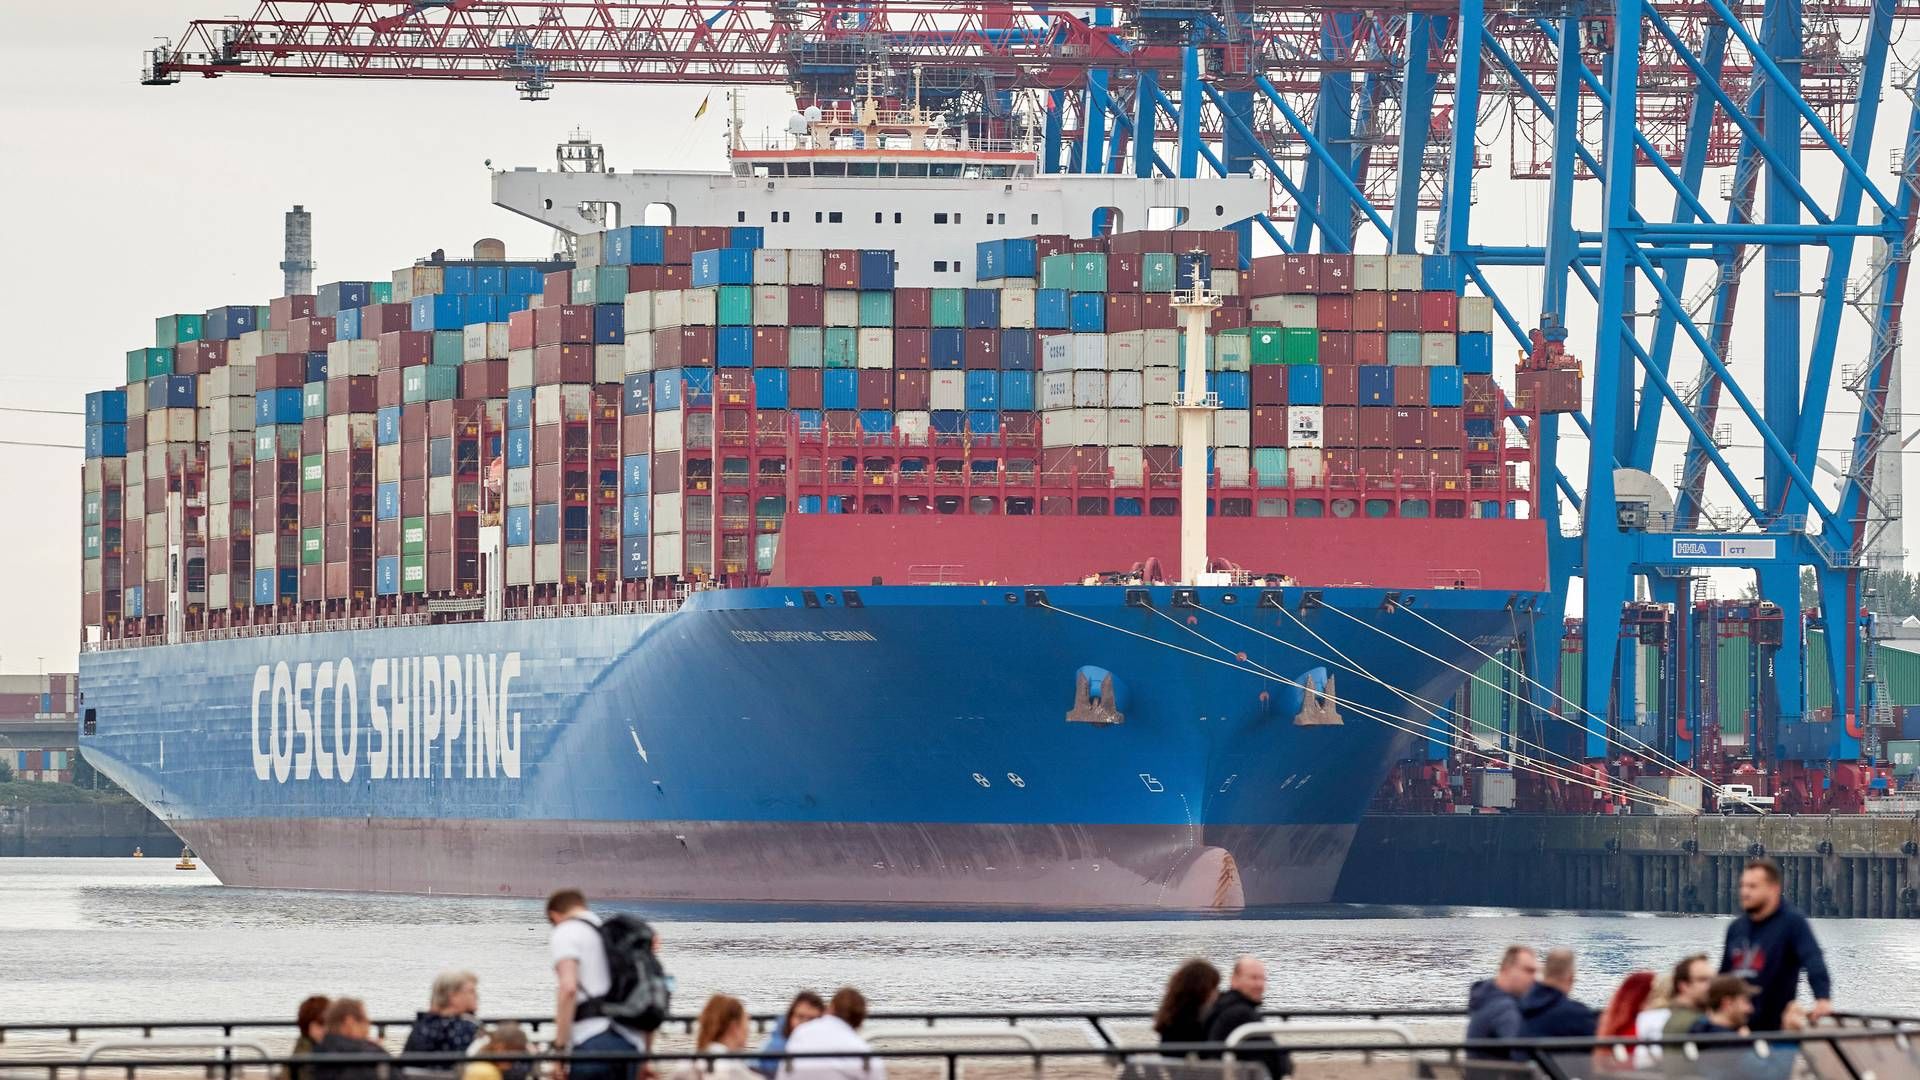 Den kinesiske shippinggruppe Cosco vil gerne befæste sin position med mere samarbejde eller investeringer i Tysklands største havn i Hamborg, siger Coscos nye europachef til medie. | Foto: Georg Wendt/AP/Ritzau Scanpix